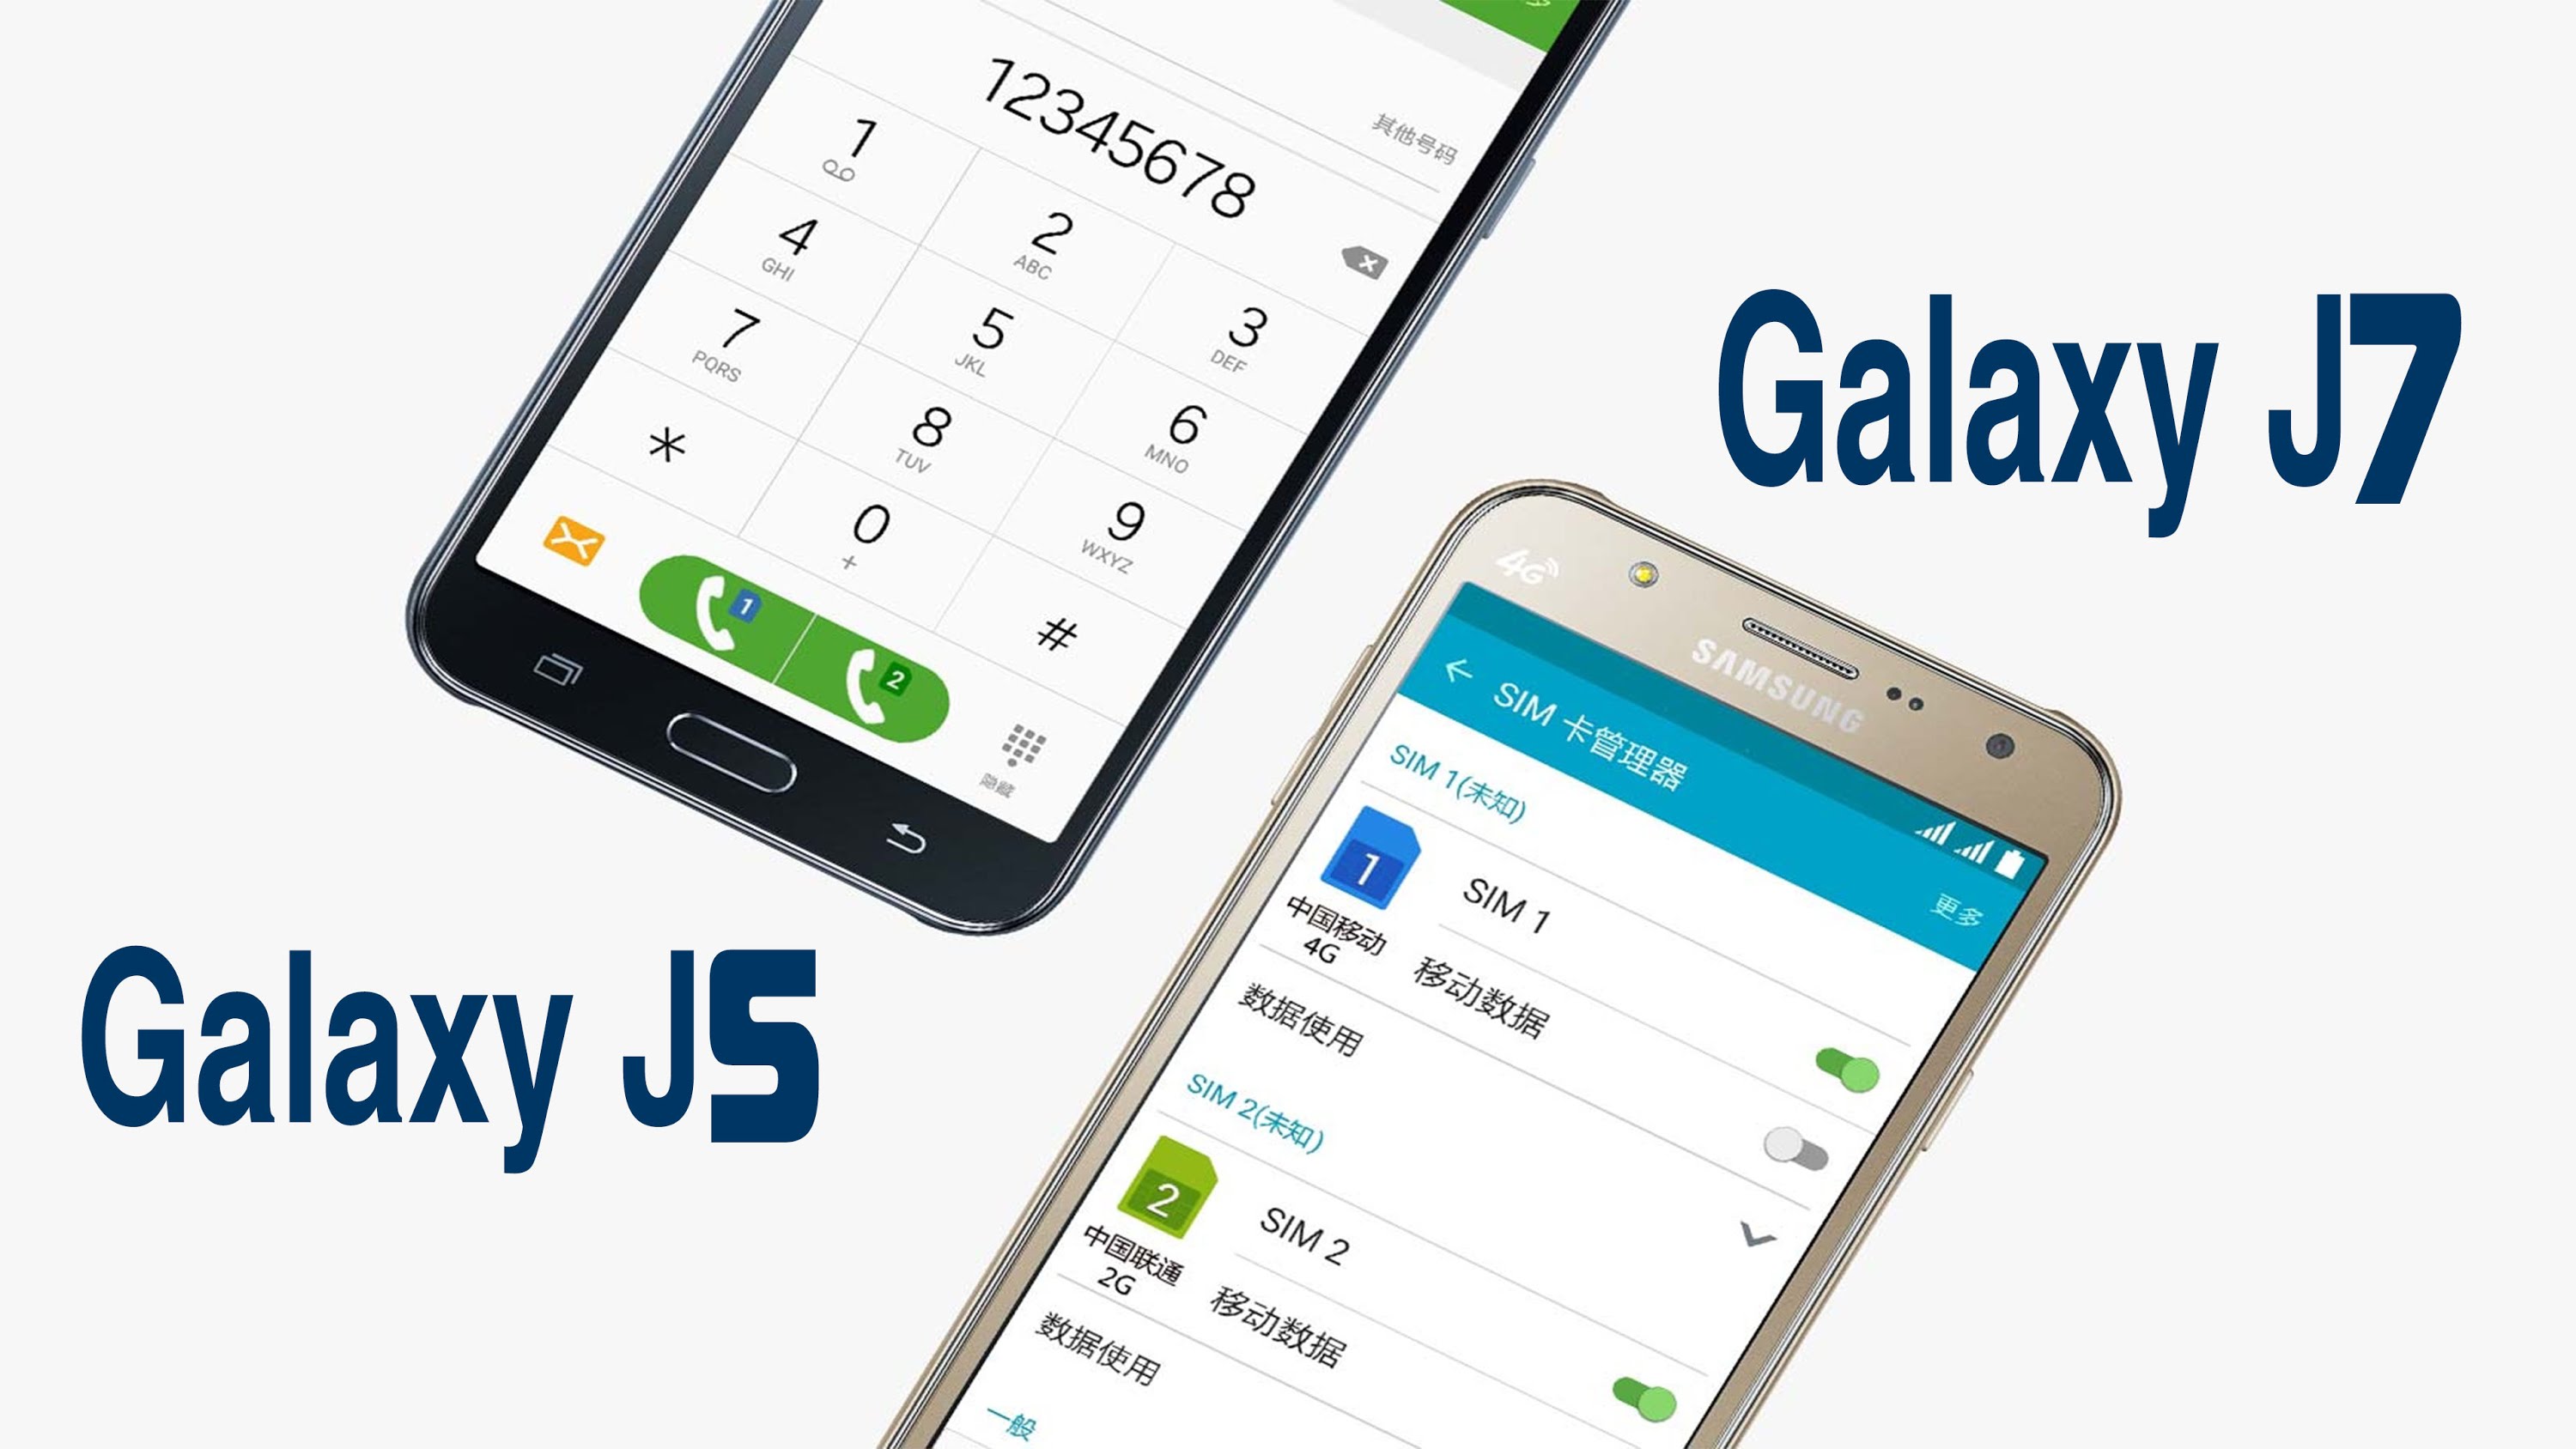 انباء عن قرب الاعلان عن Samsung Galaxy J7 و Galaxy J5 فئة 2016 